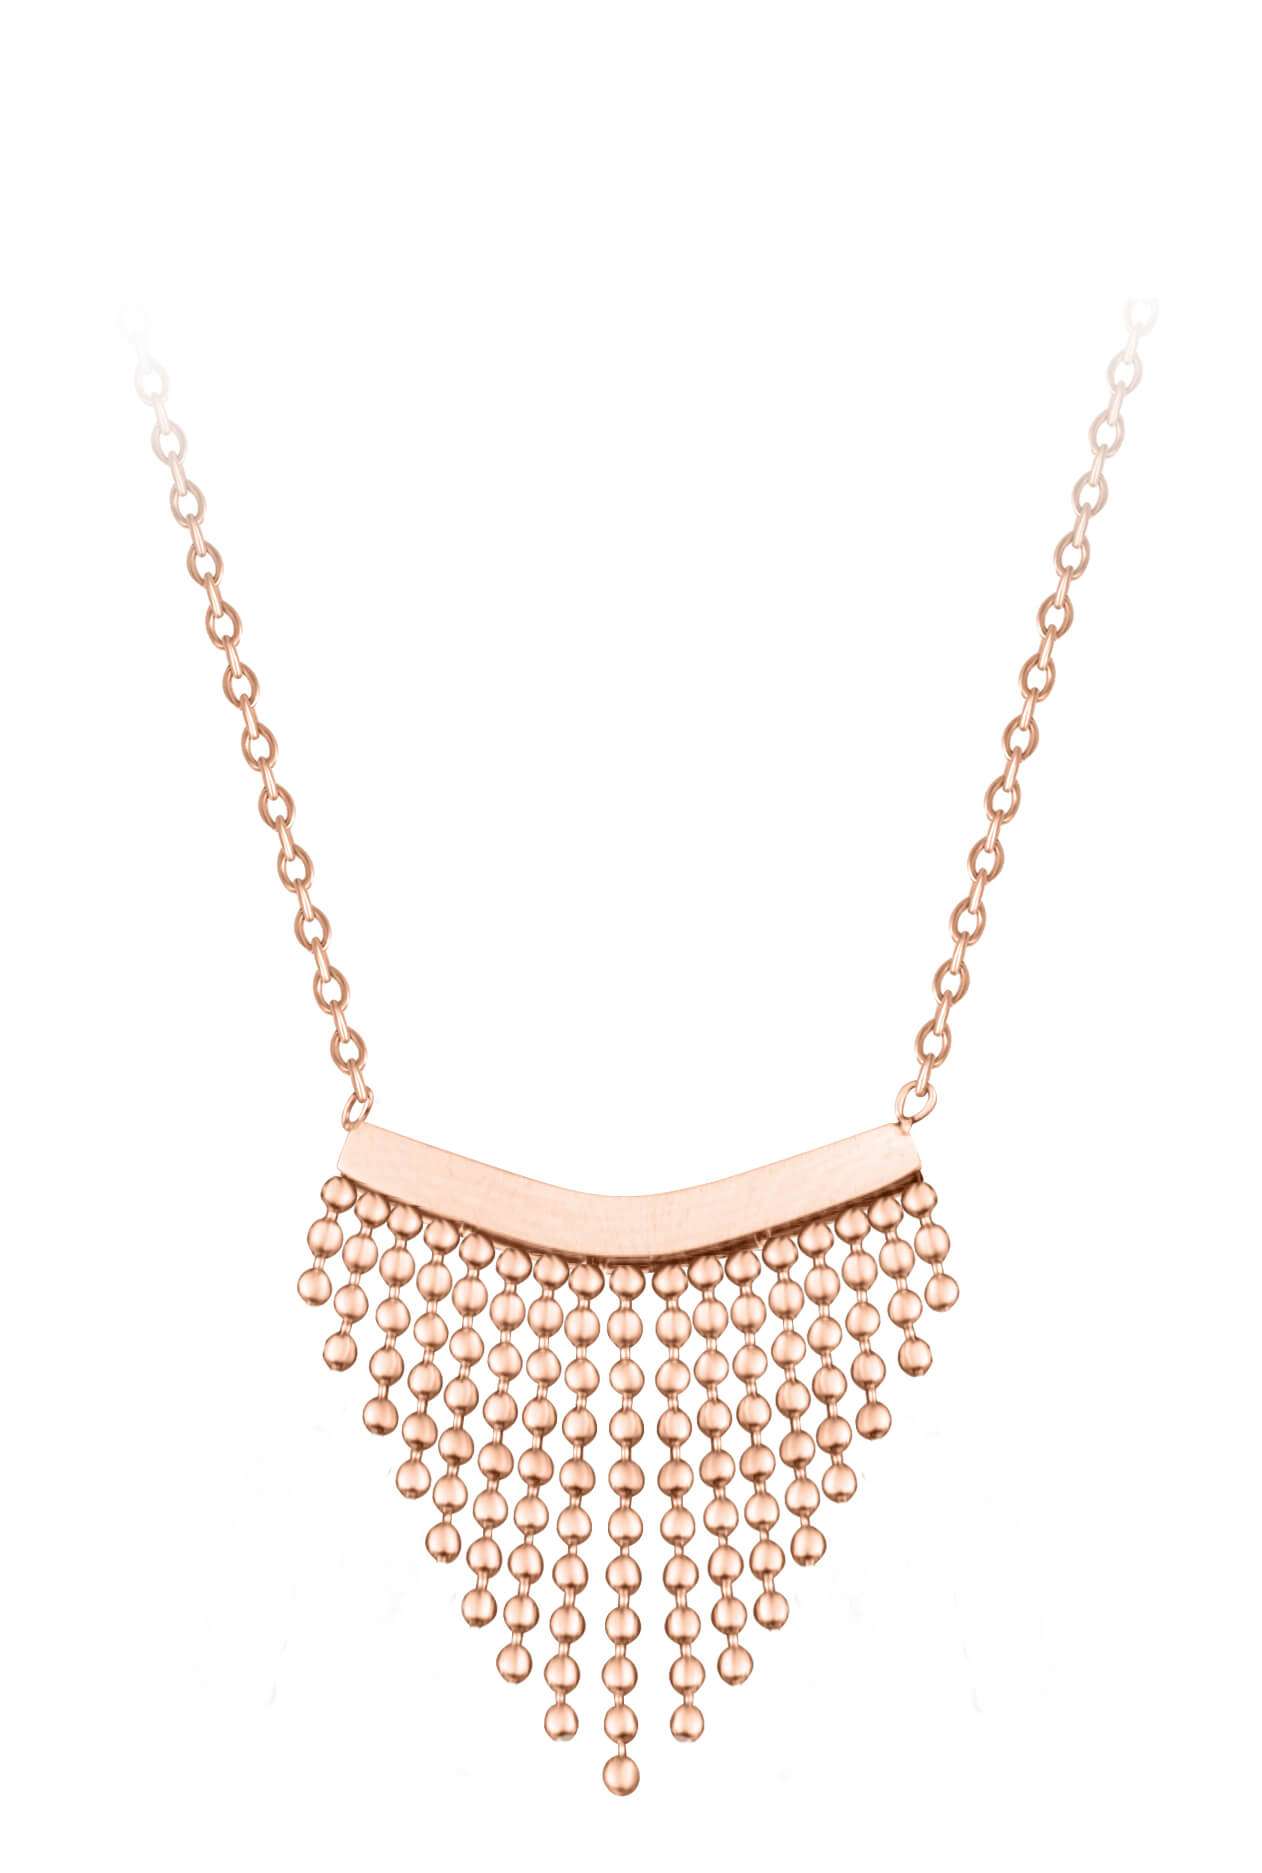 Troli -  Moderní ocelový náhrdelník s ozdobou Chains Rose Gold